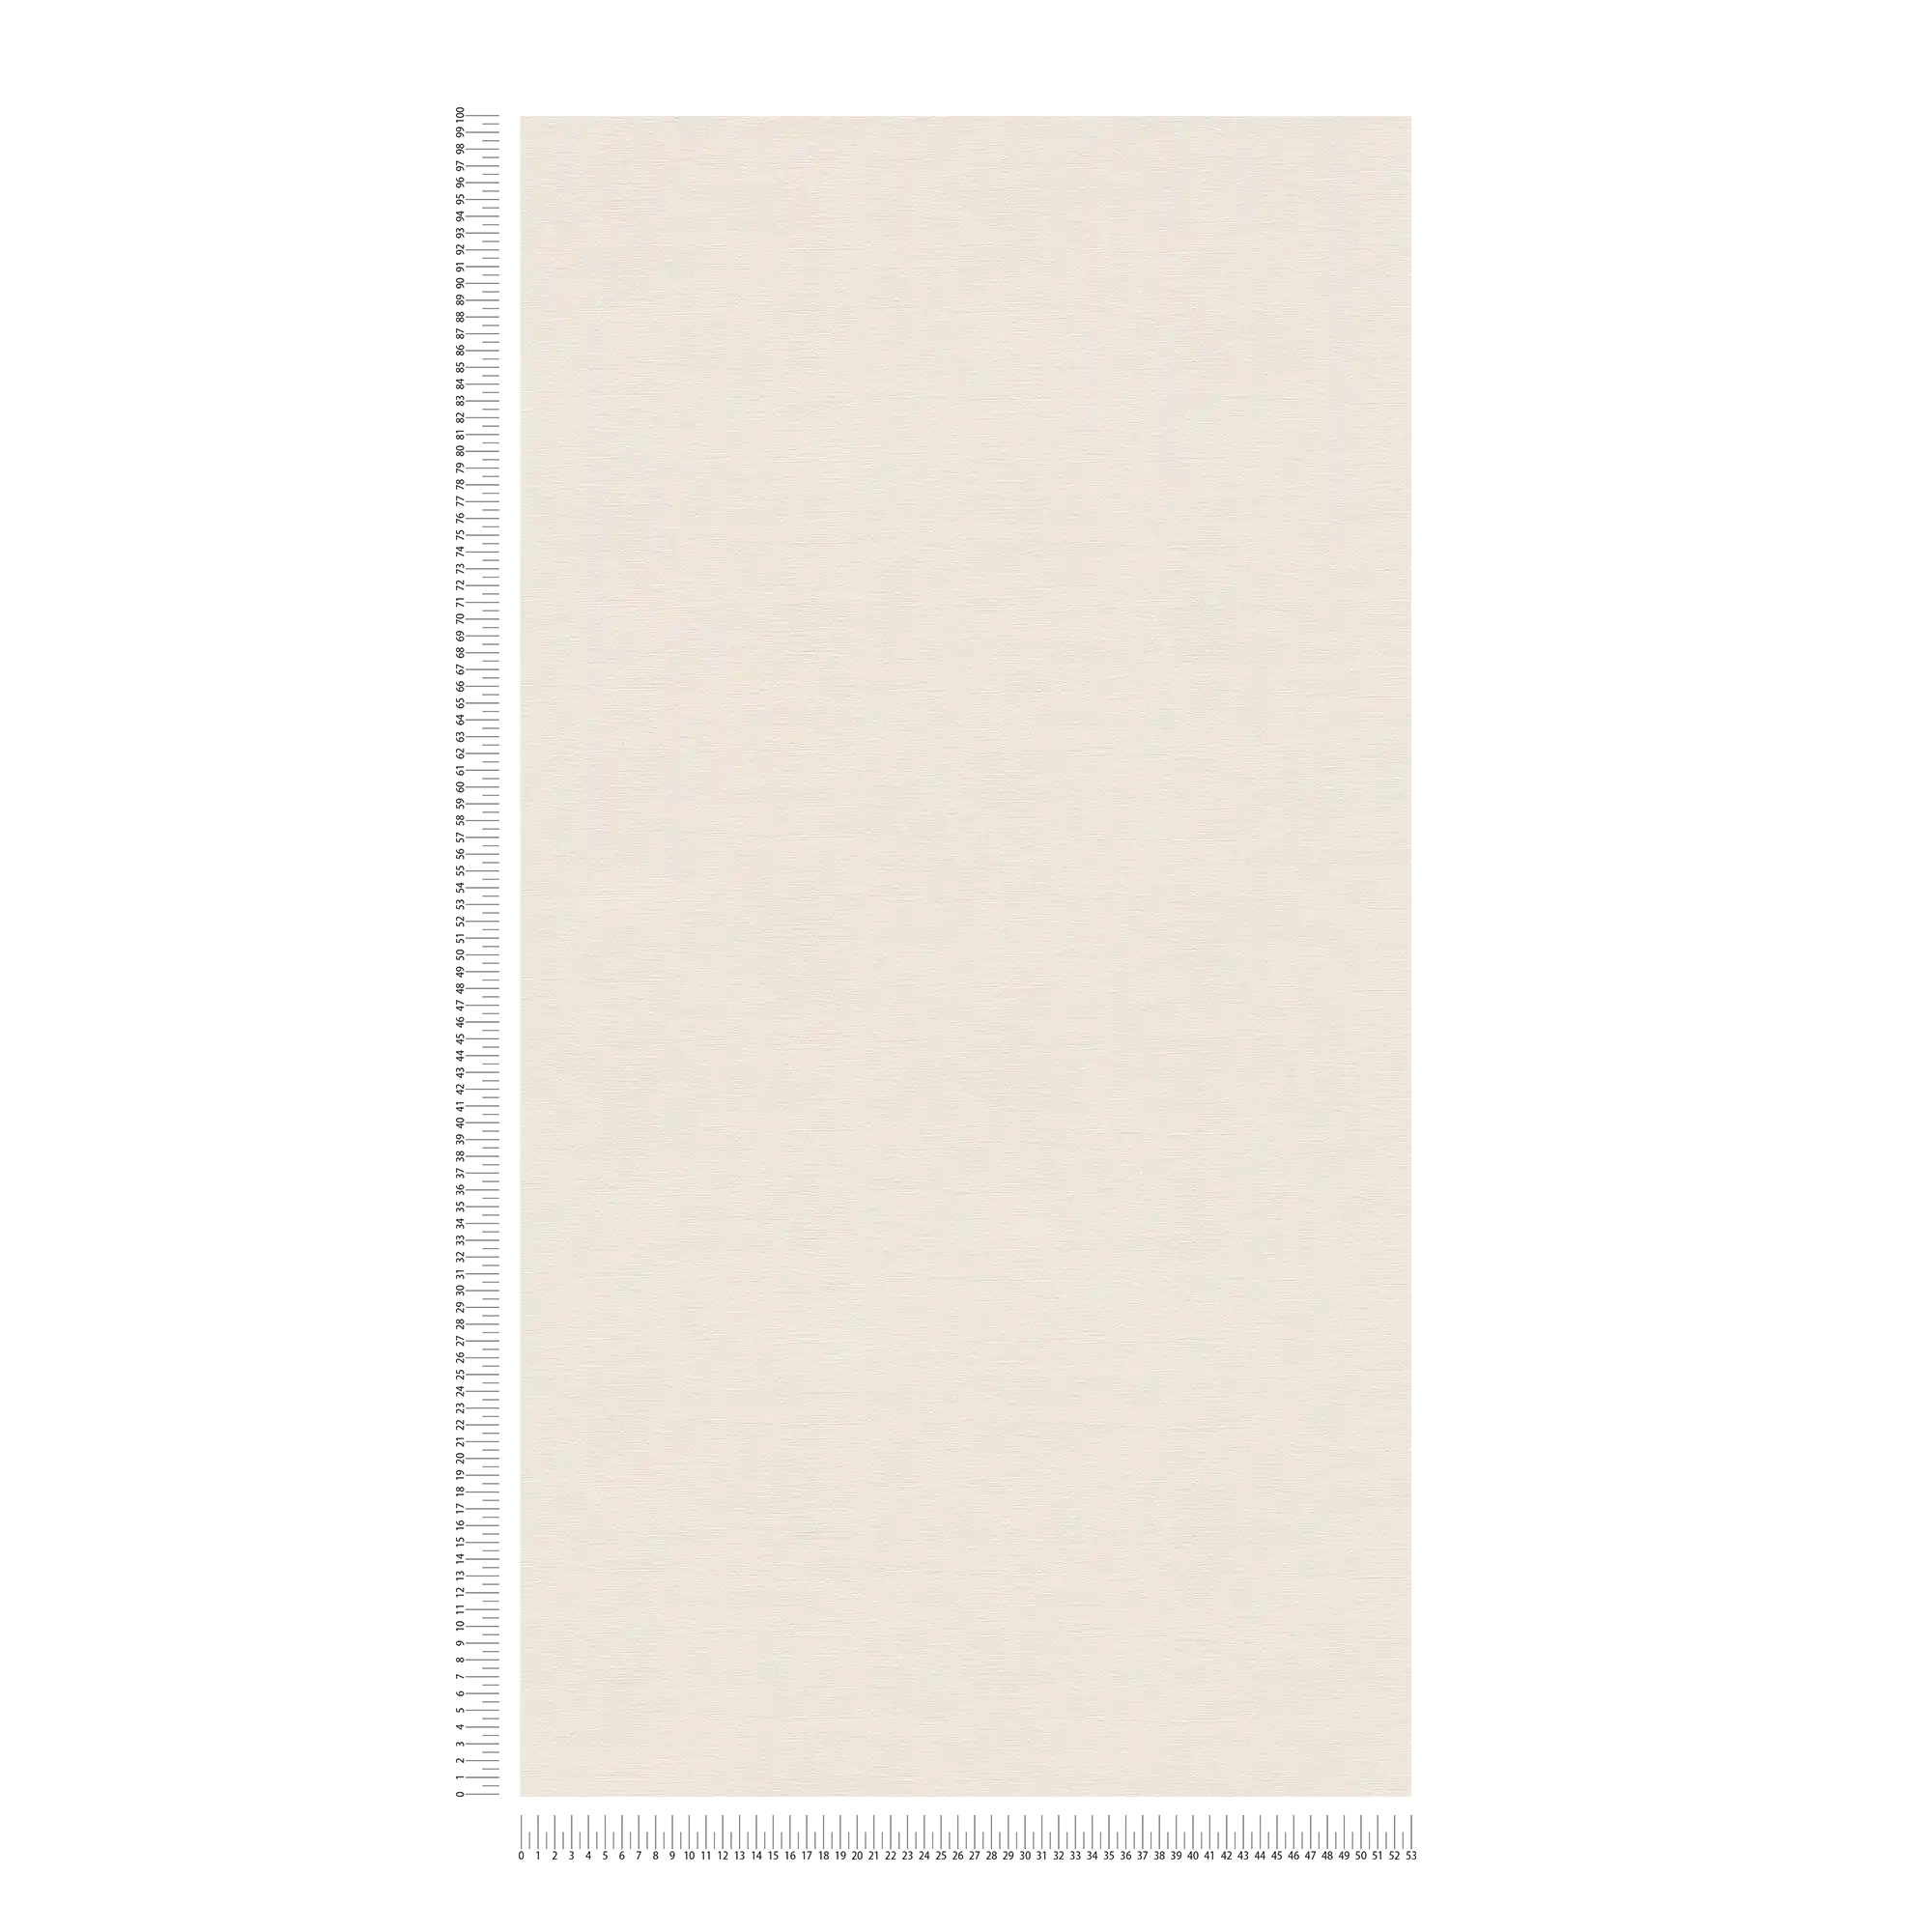             Non-woven wallpaper plain with light sheen - beige, cream
        